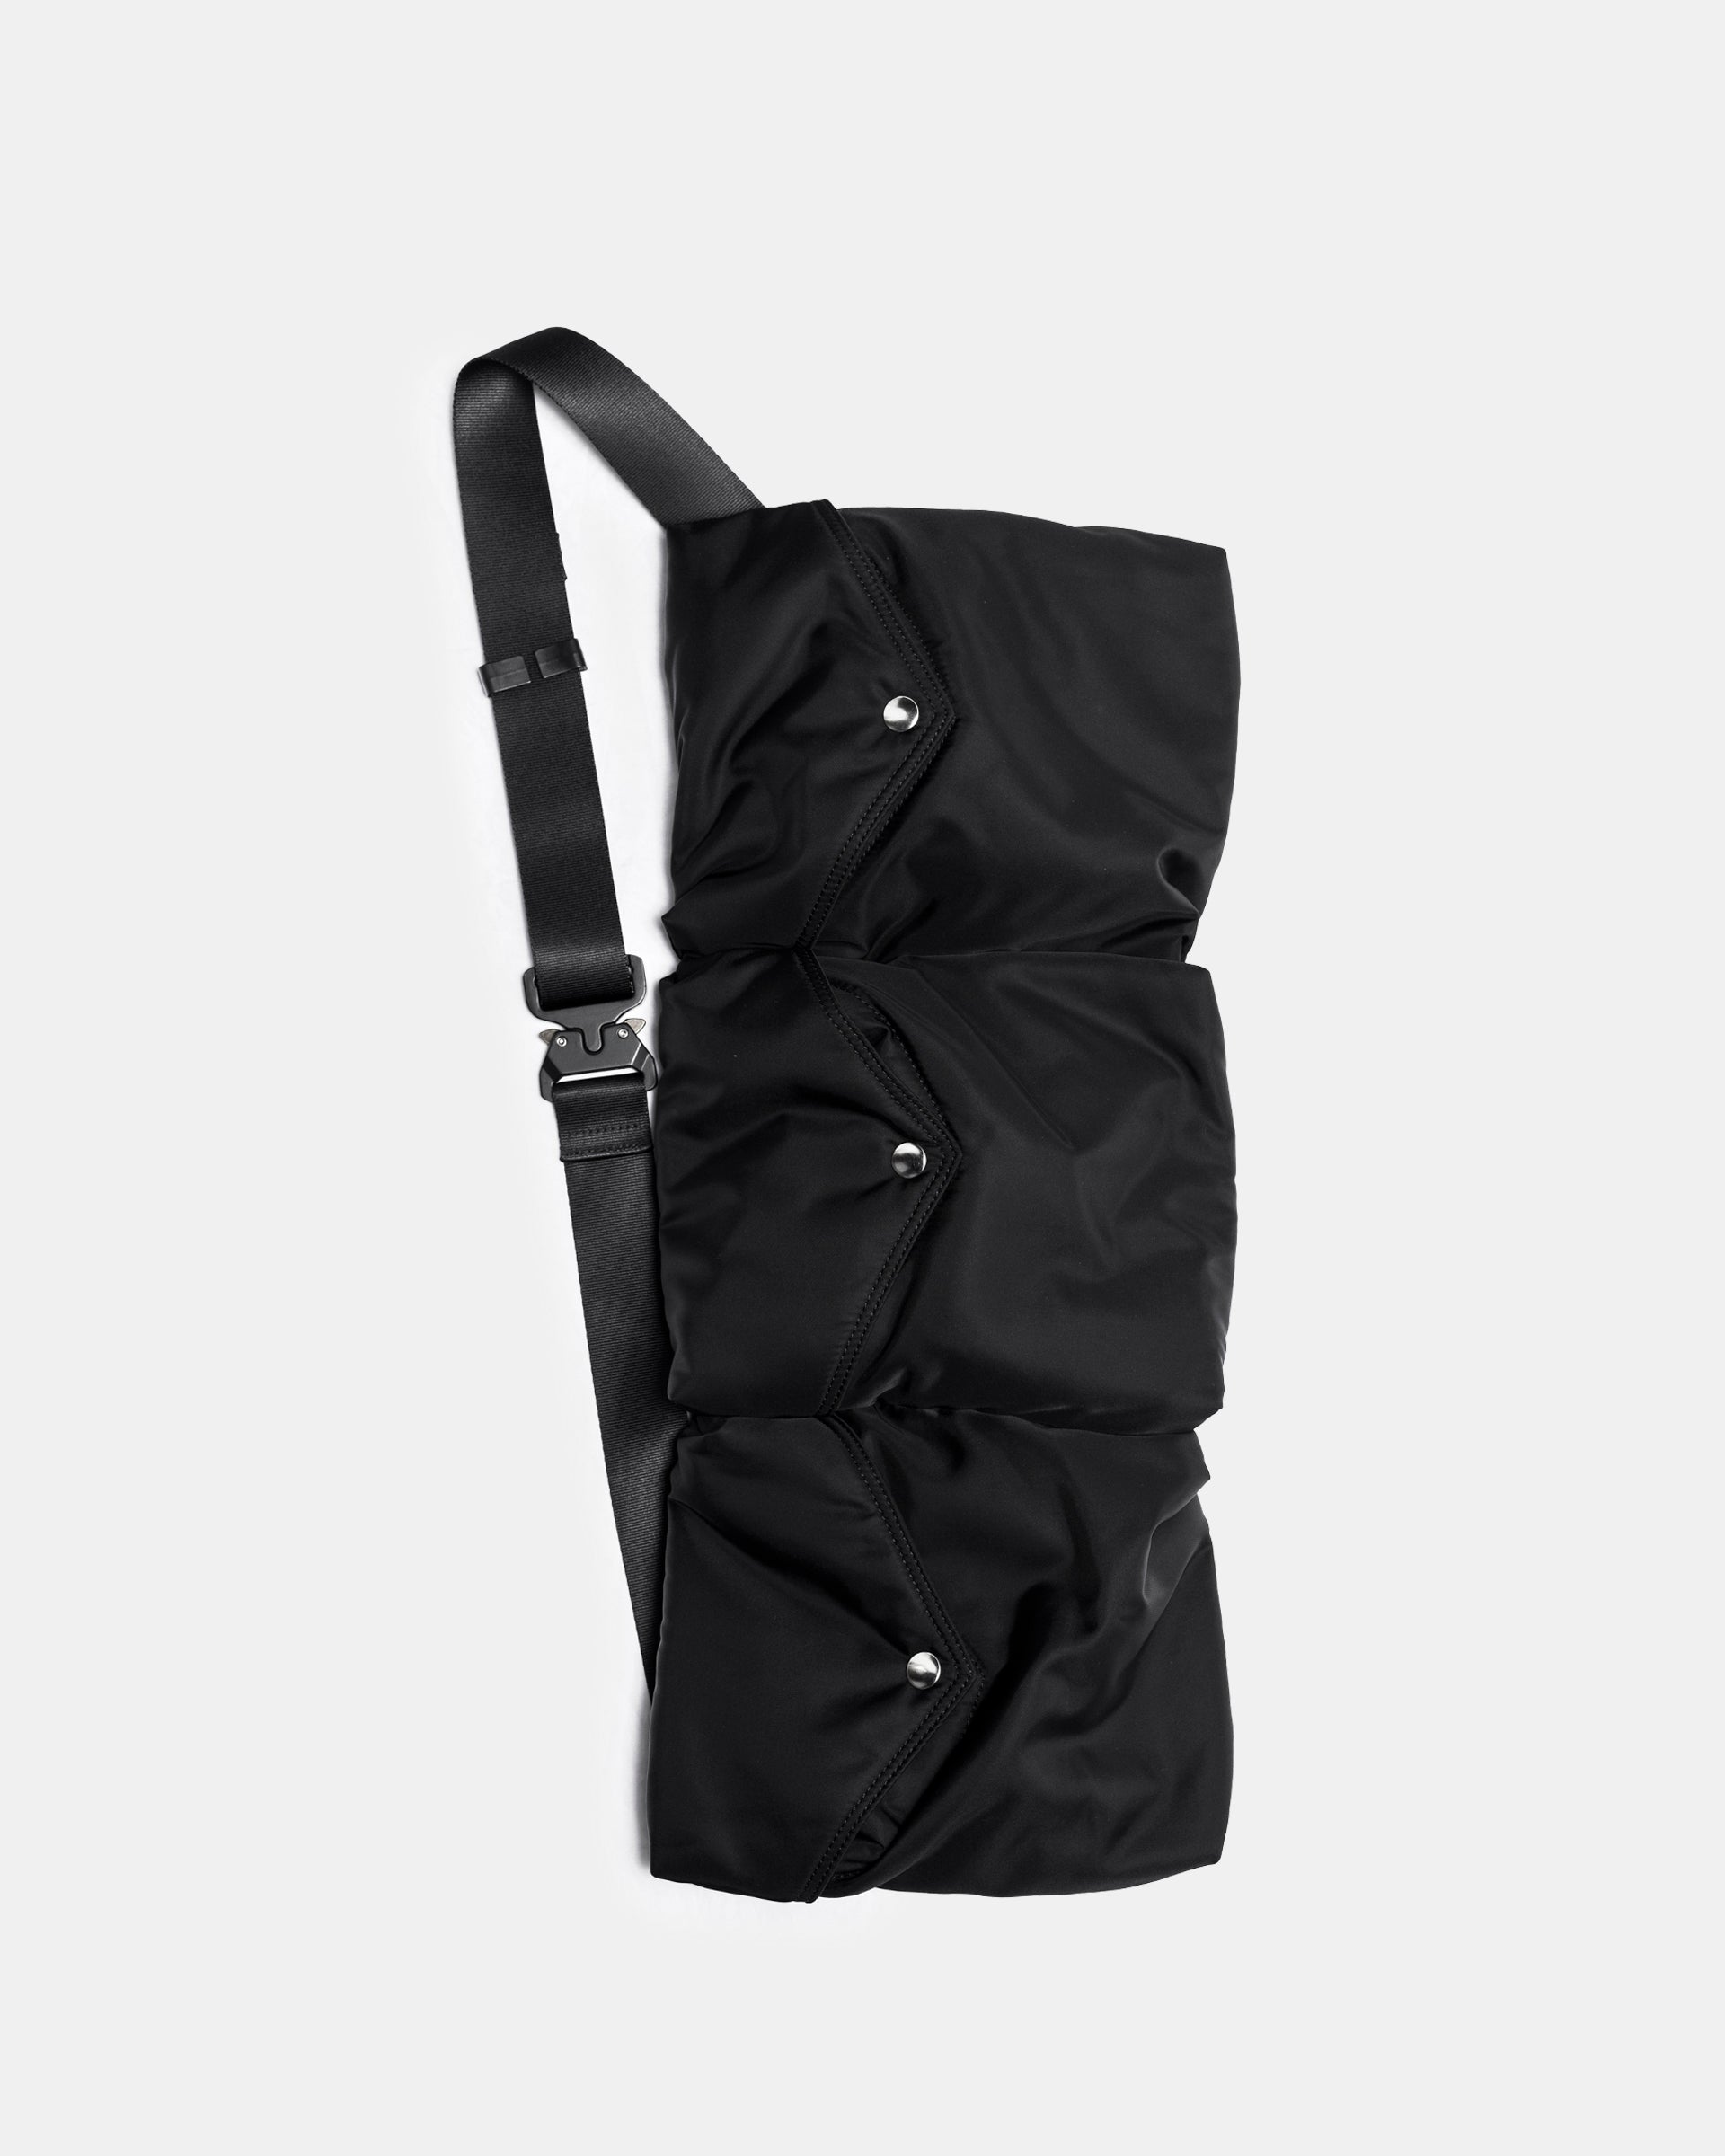 Padded Multi-Pocket Bag in Black